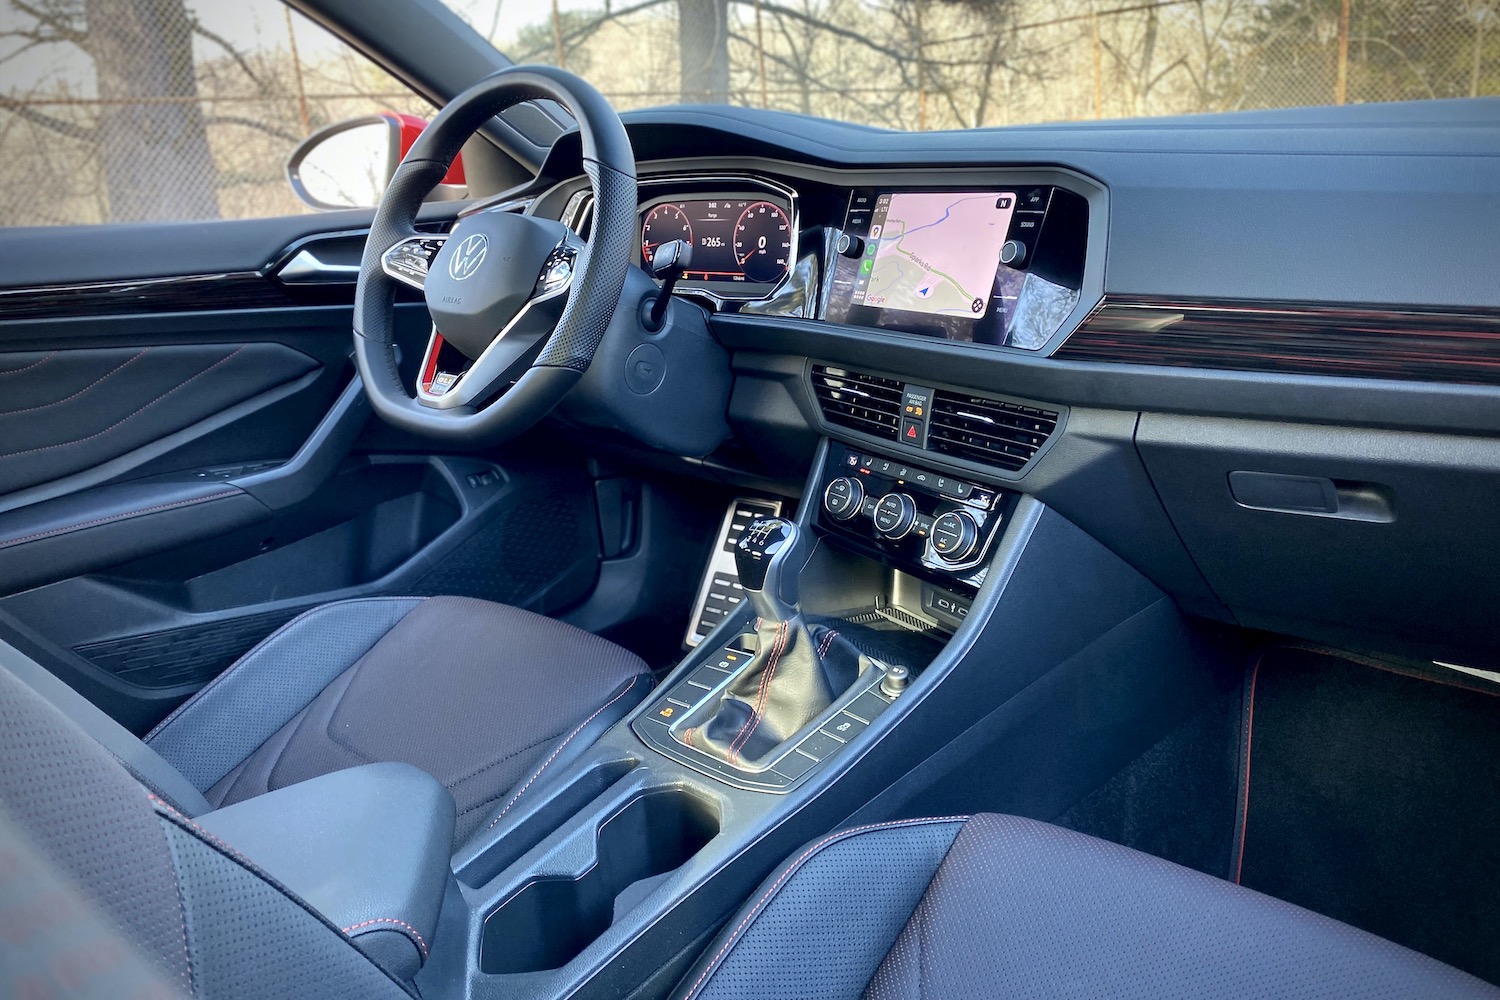 2022 Volkswagen Jetta GLI dashboard from front passenger's seat.